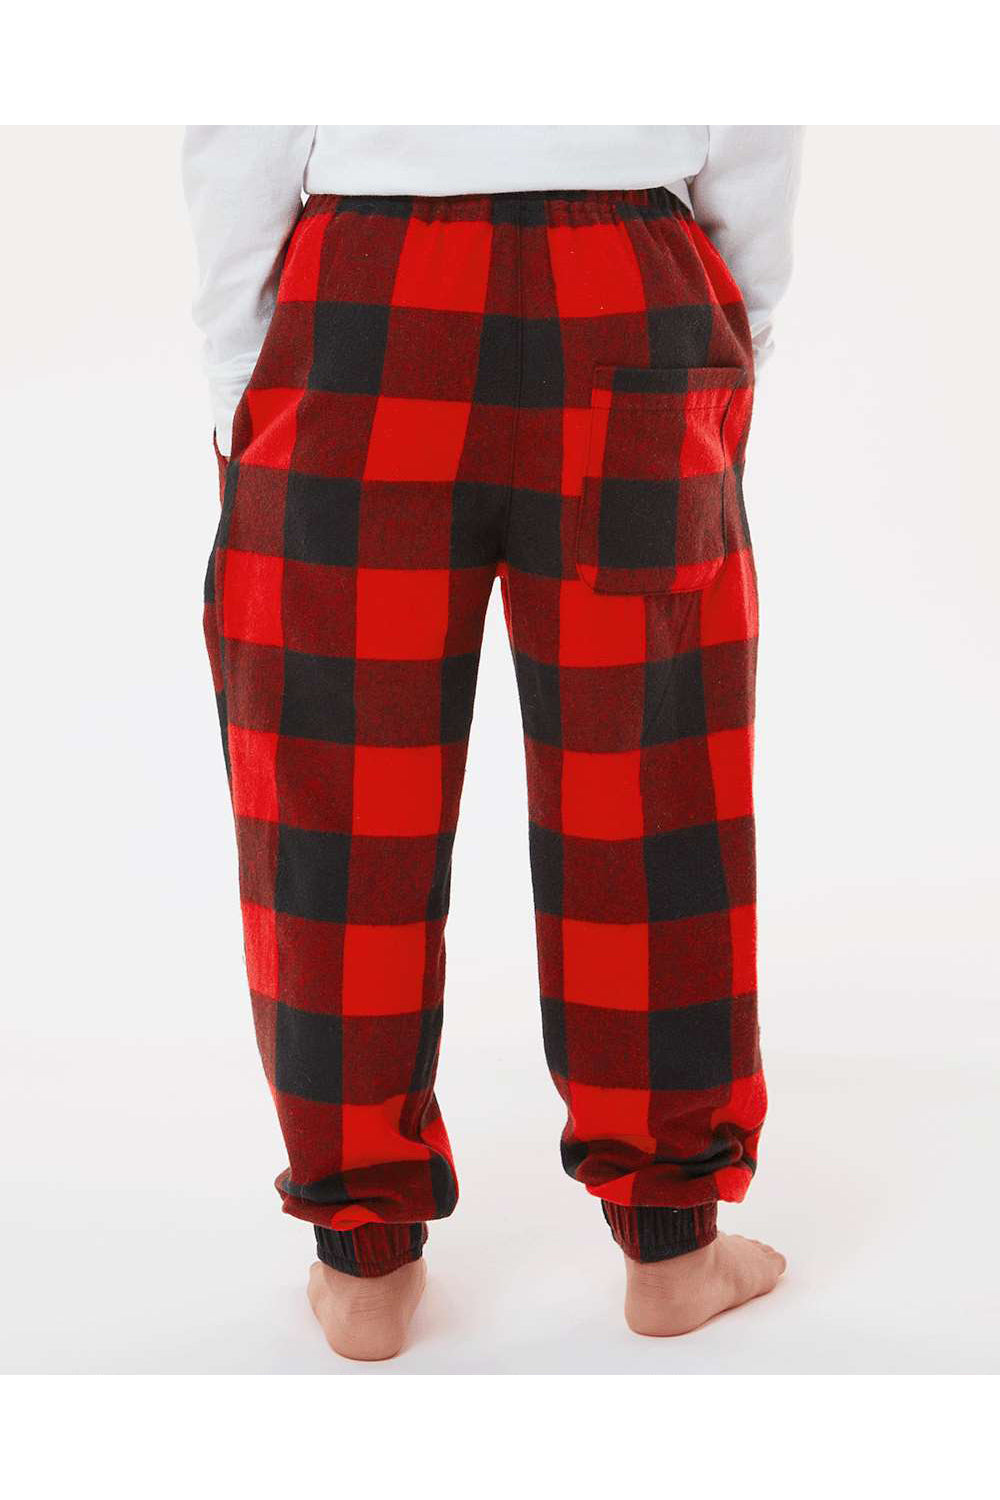 Burnside 4810 Youth Flannel Jogger Sweatpants w/ Pockets Red/Black Model Back